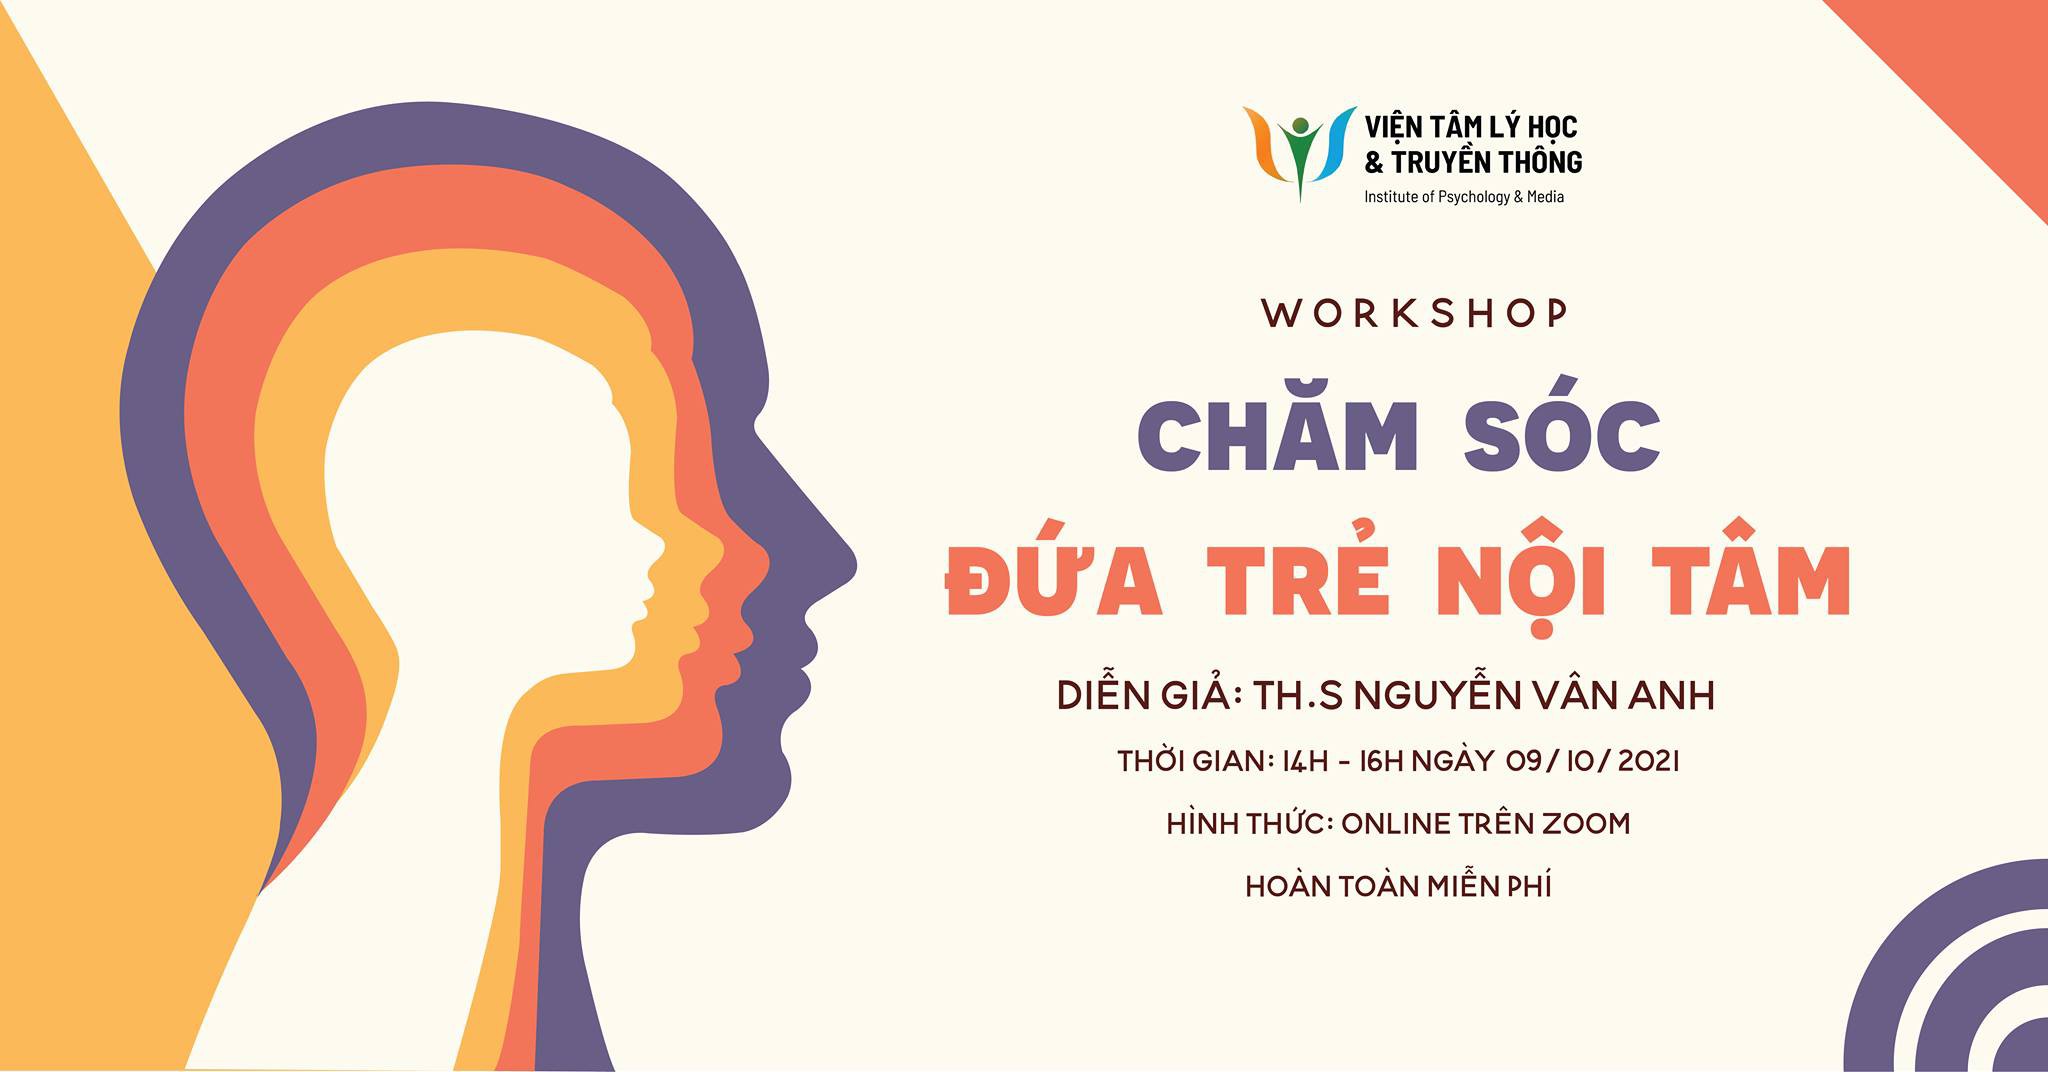 Workshop miễn phí - Chăm sóc ĐỨA TRẺ NỘI TÂM của Thạc sĩ Tâm lý Nguyễn Vân Anh